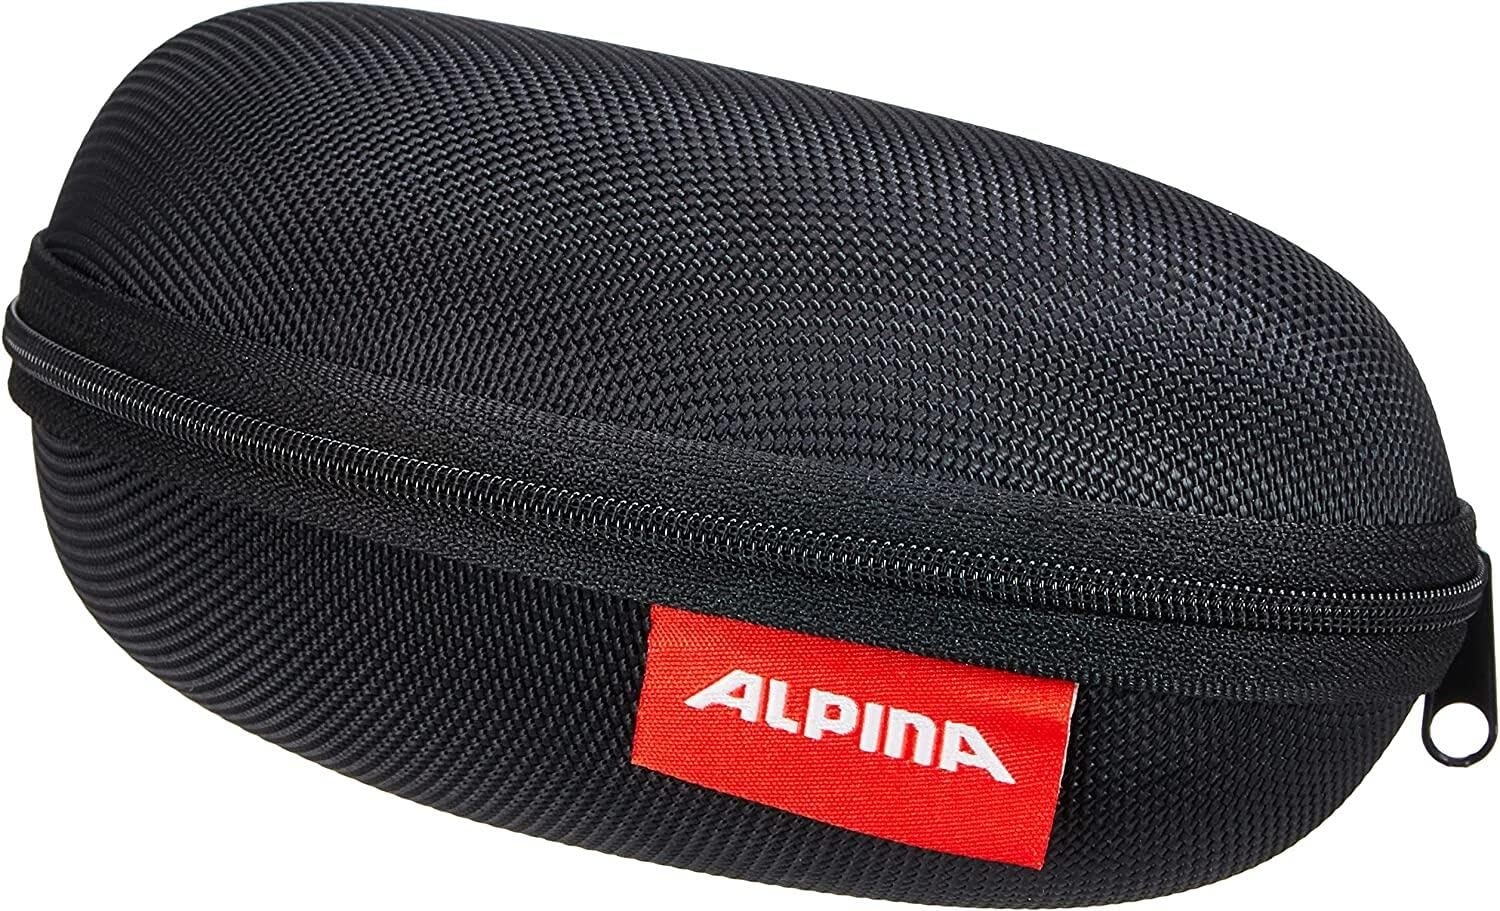 ALPINA CASE LARGE - Stabiles, Bruchsicheres & hochwertiges Etui für Sport- und Sonnenbrillen, black, One Size